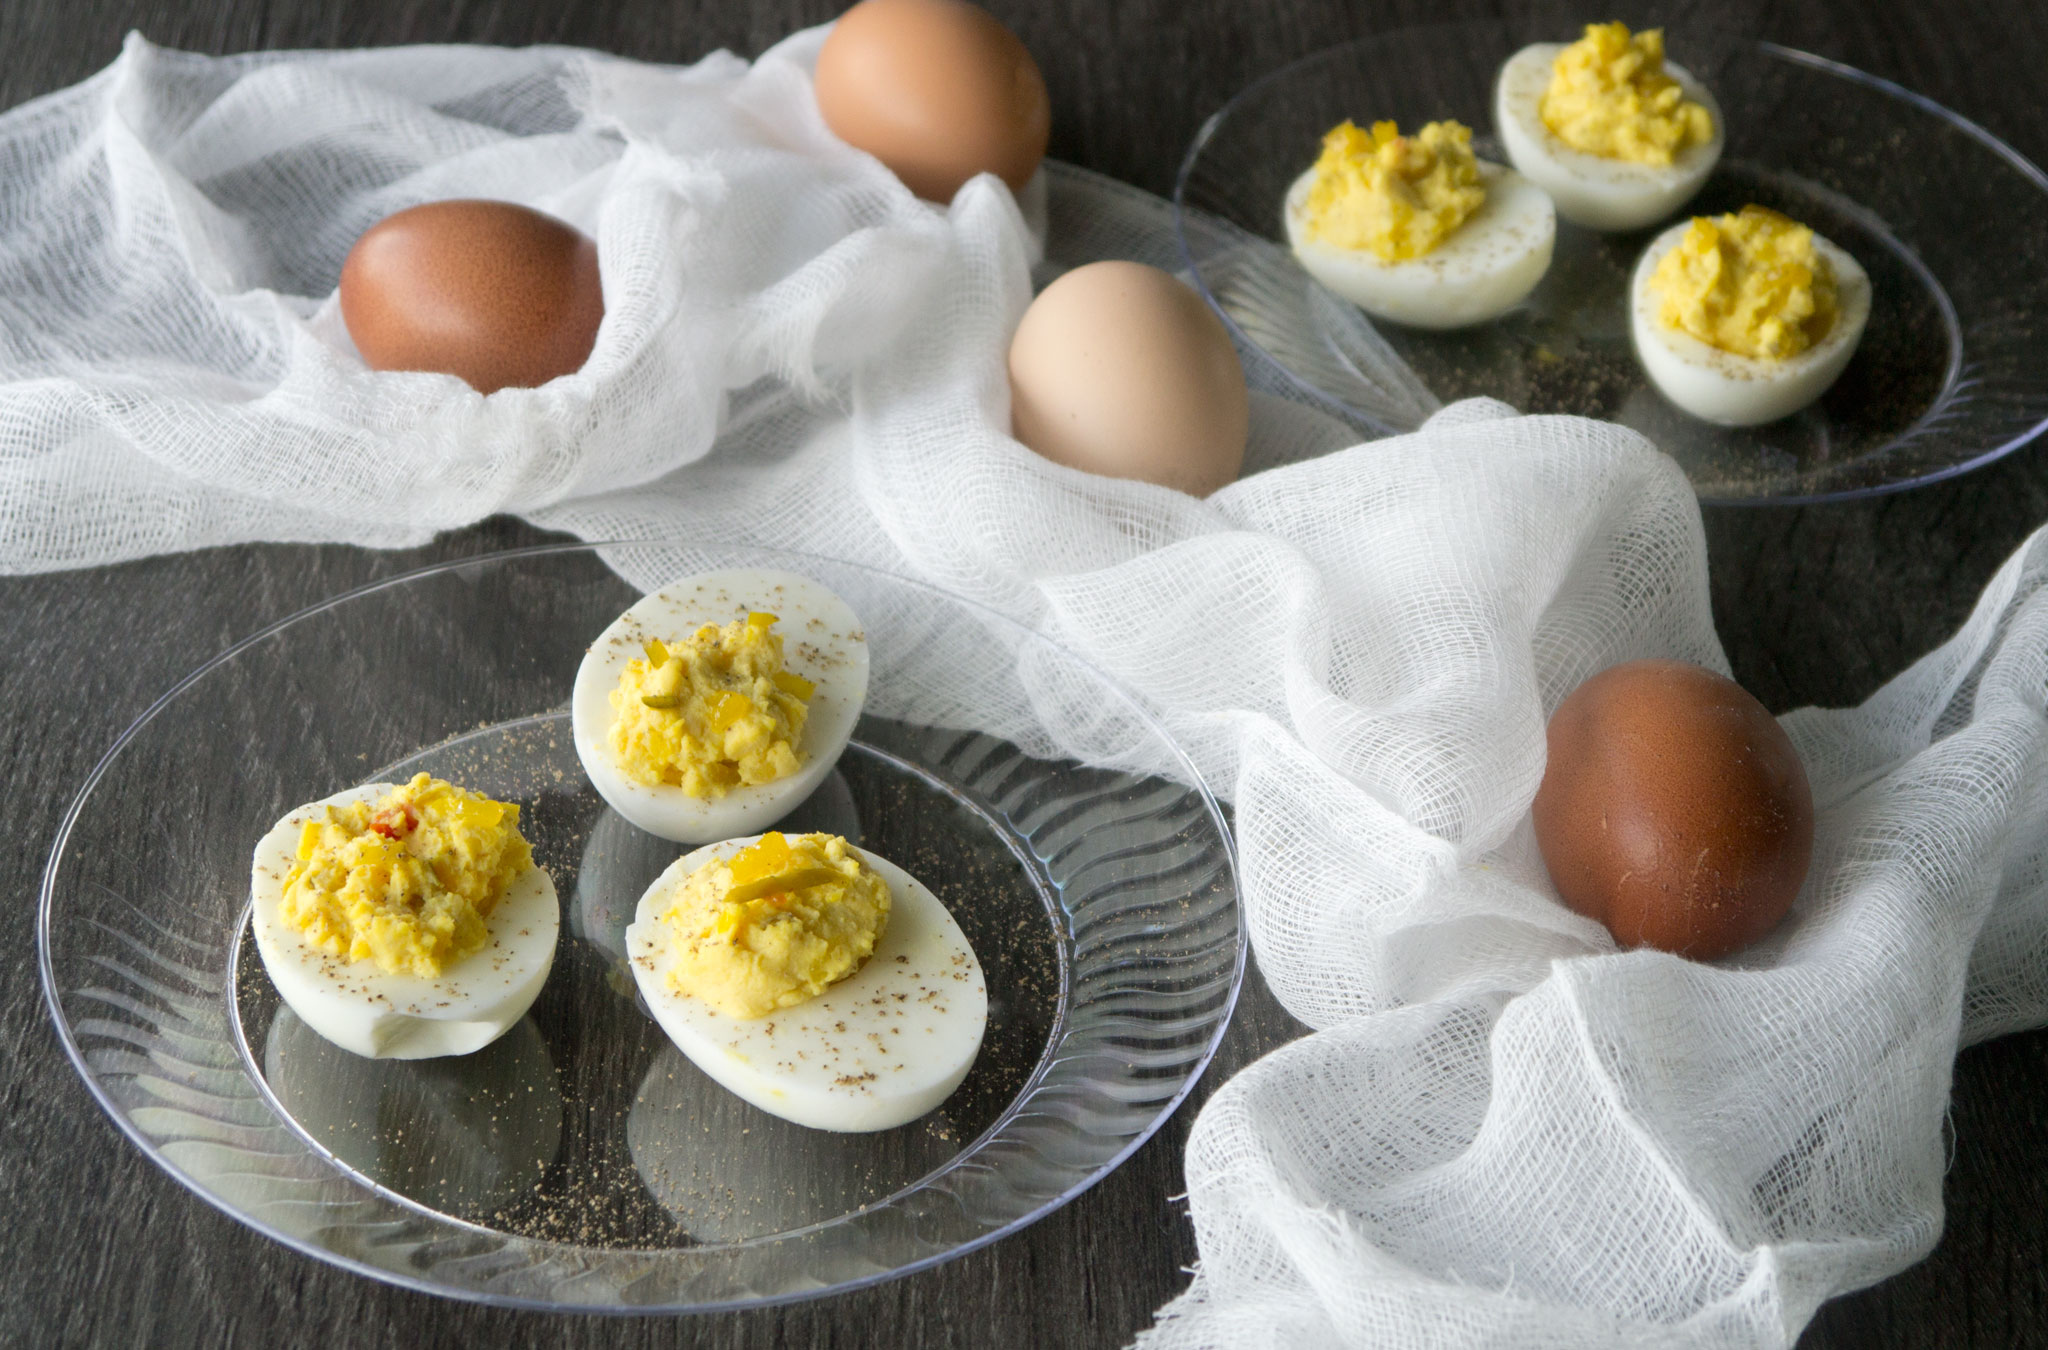 https://cookbetterthan.com/wp-content/uploads/2020/03/Moms-classic-deviled-eggs-cover-photo.jpg